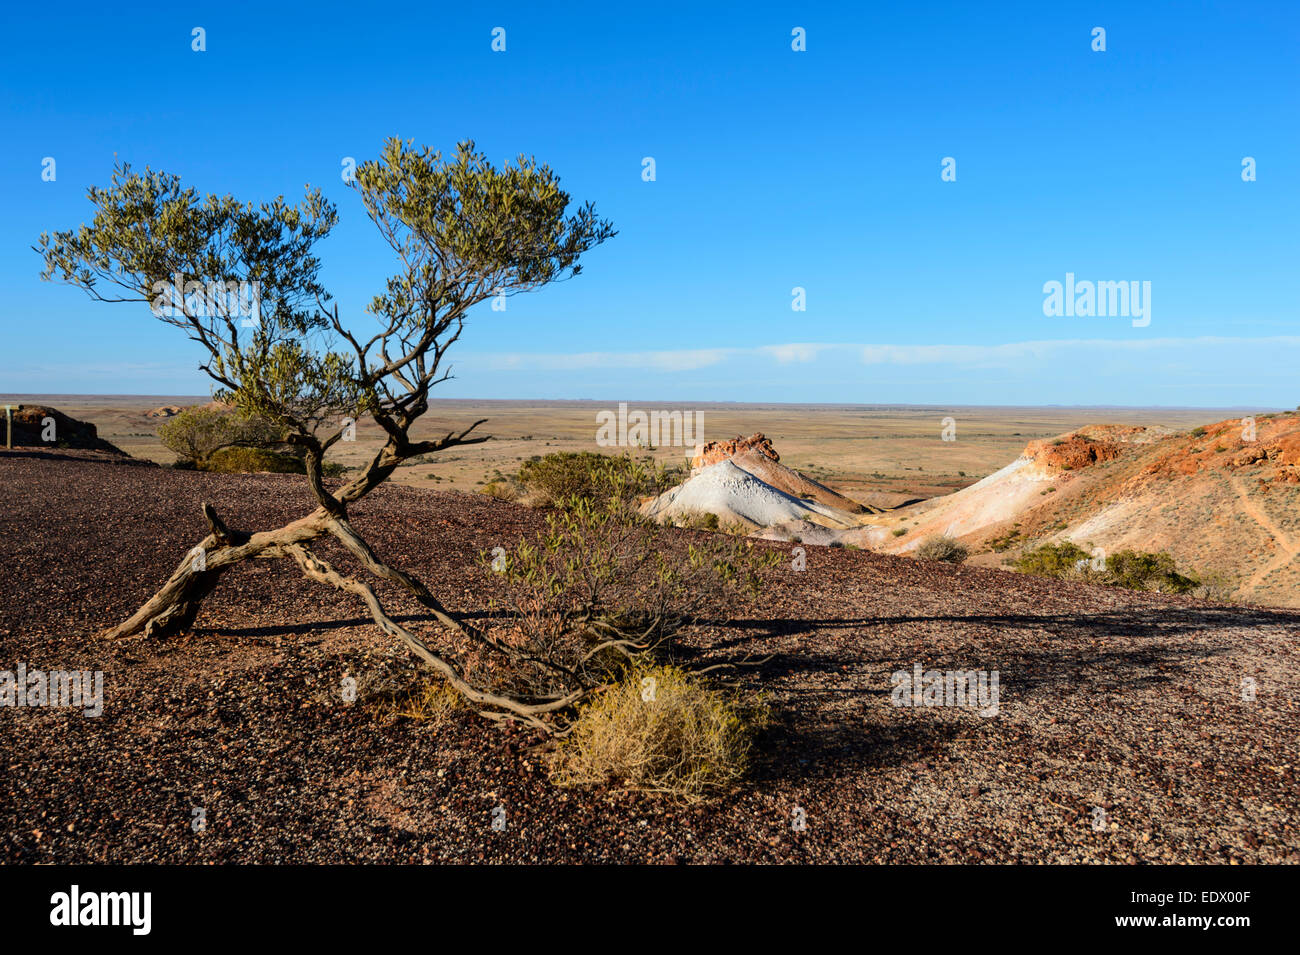 Les échappées sont un désert semi-aride faite de mesas et collines érodées, près de Coober Pedy, Australie du Sud, SA, Australie Banque D'Images